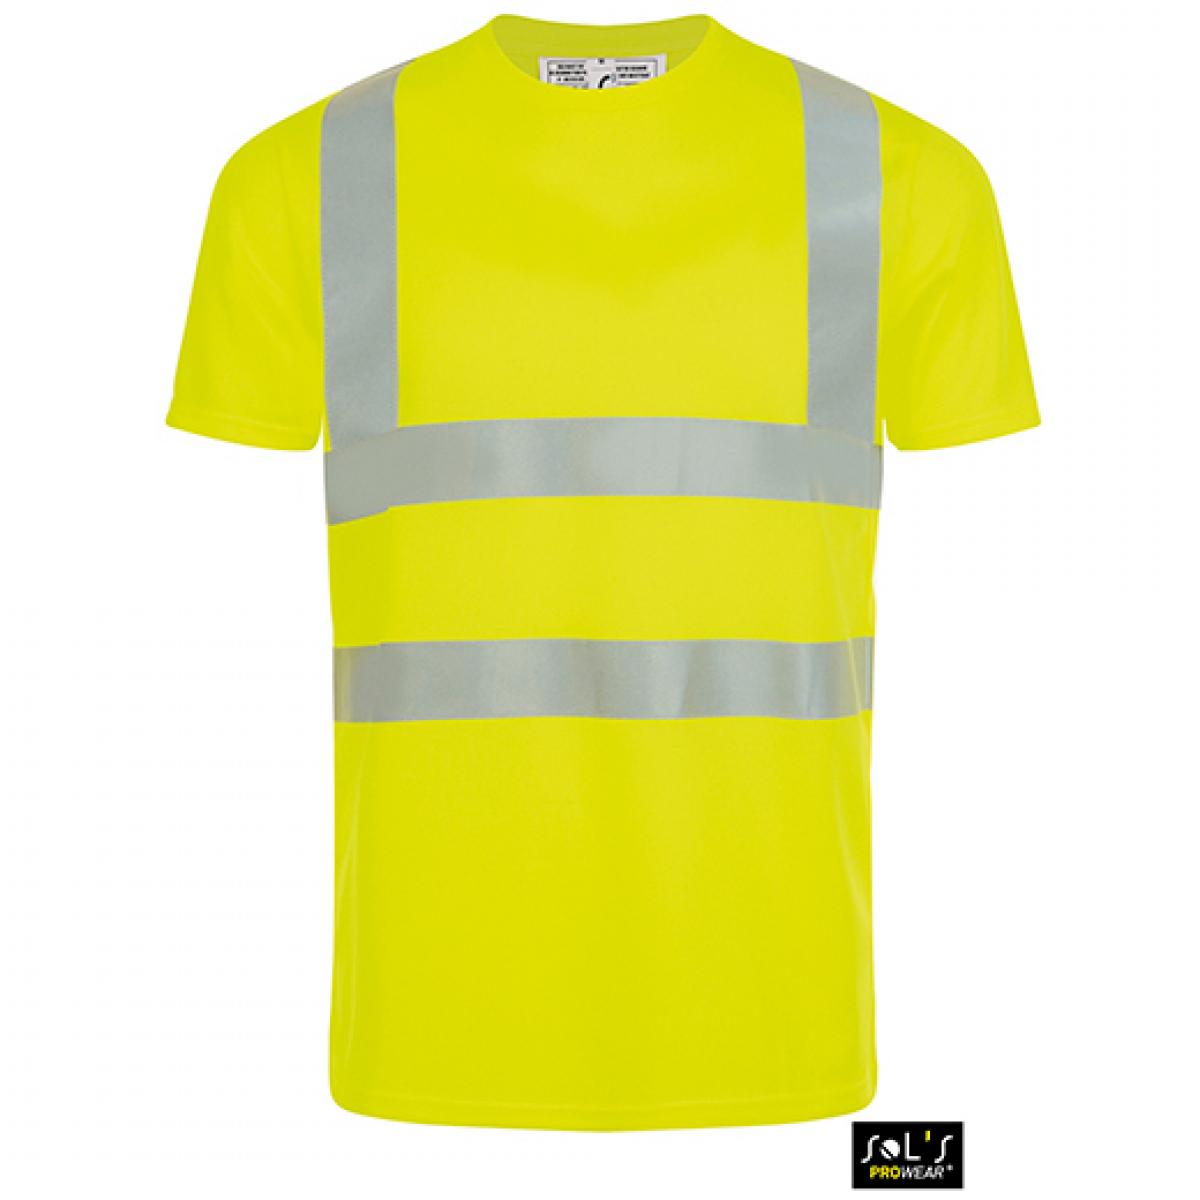 Hersteller: SOLs ProWear Herstellernummer: 01721 Artikelbezeichnung: Herren Mercure Pro Arbeits-/Sicherheits T-Shirt Farbe: Neon Yellow